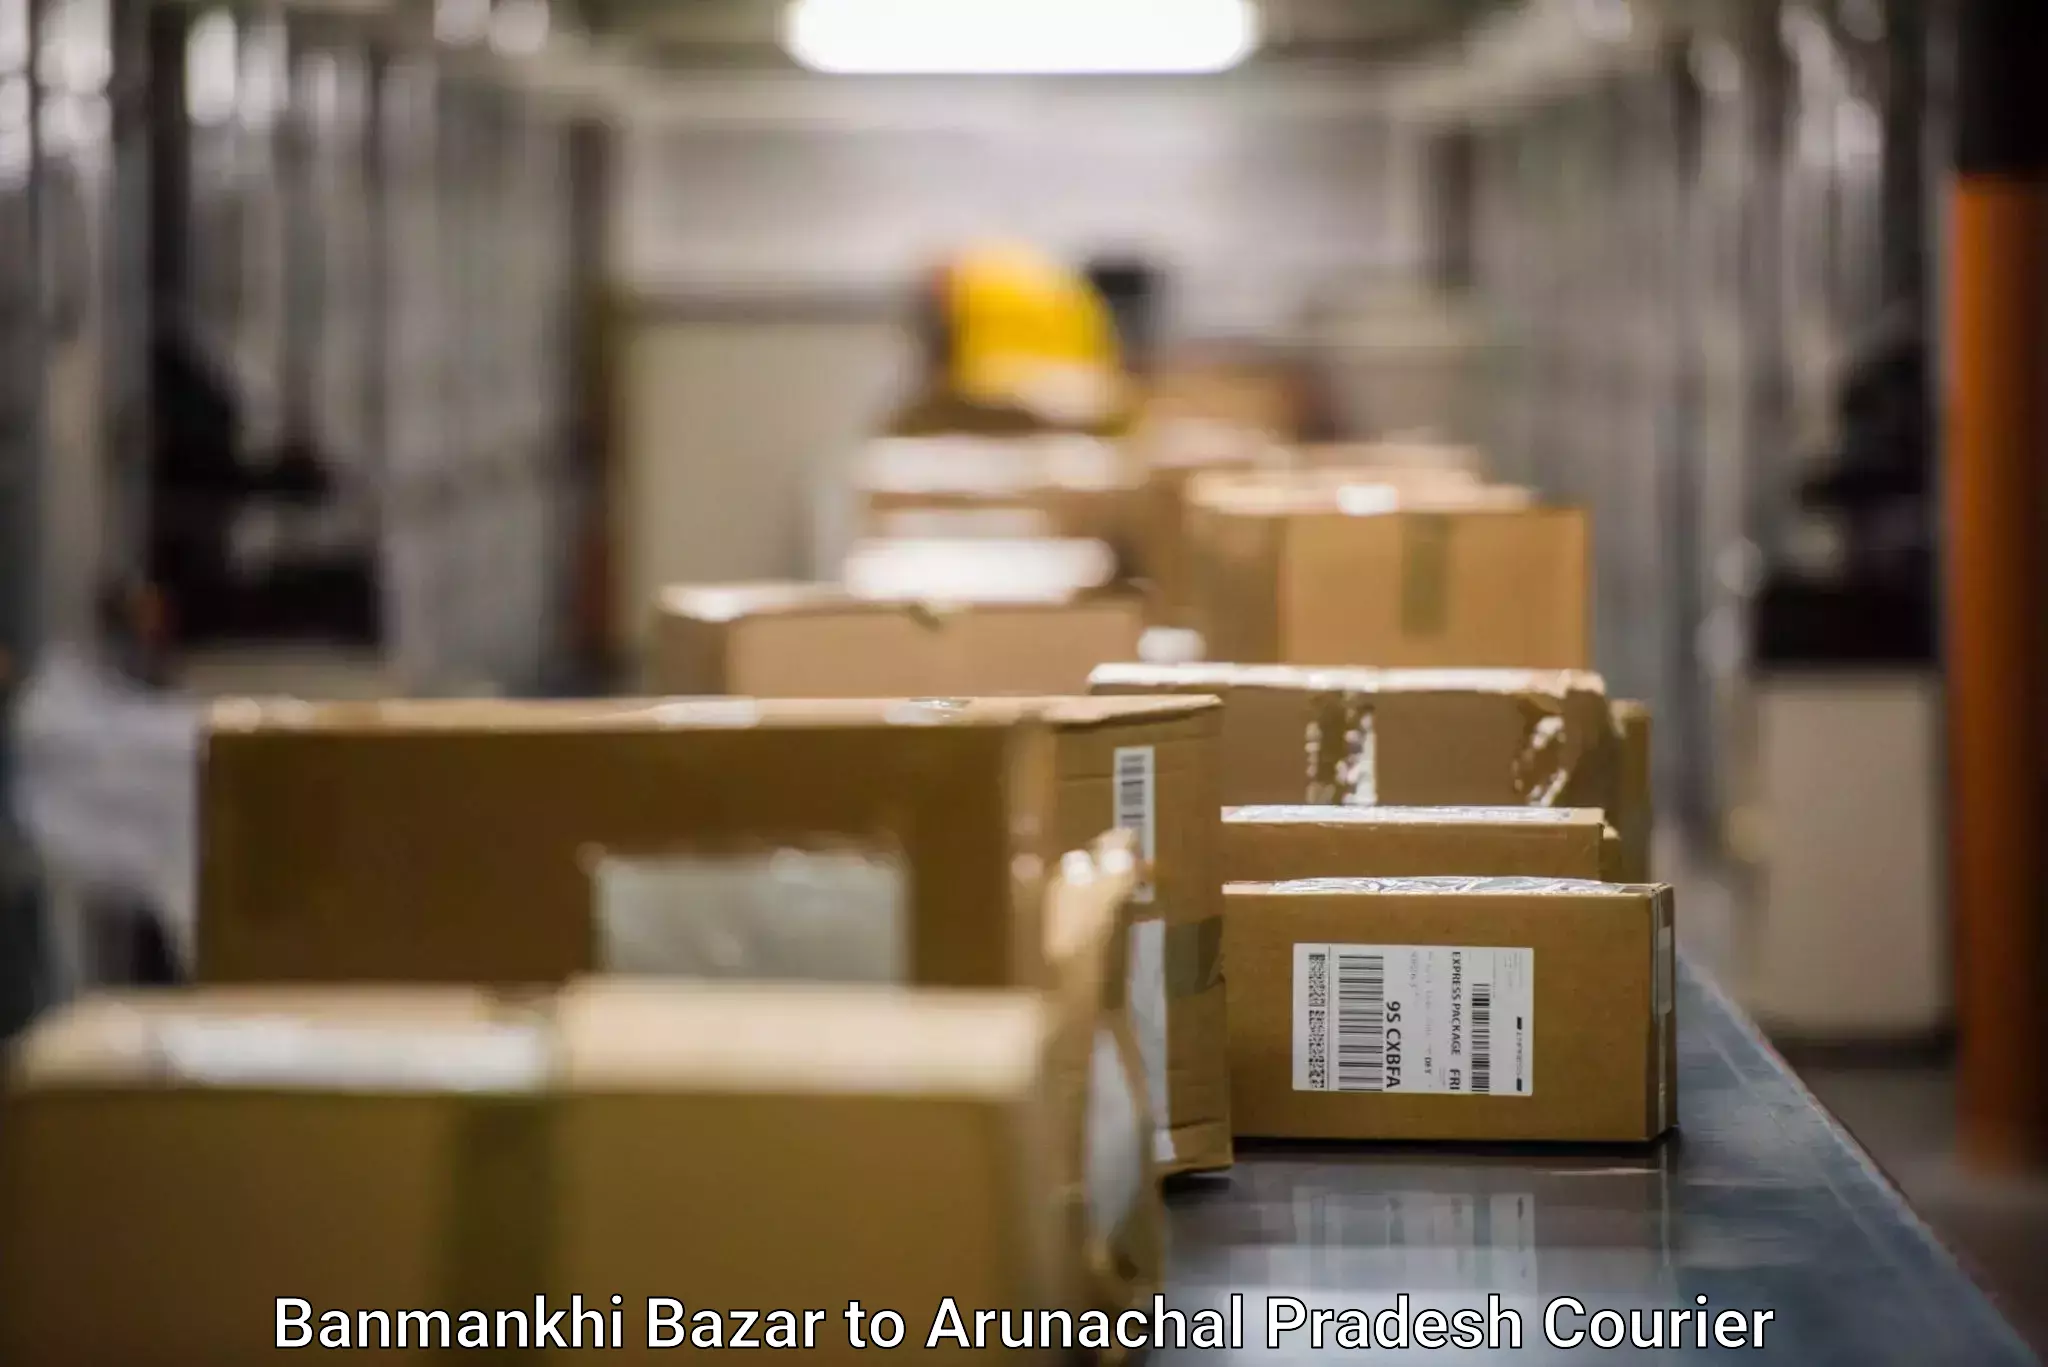 Cargo courier service Banmankhi Bazar to Arunachal Pradesh